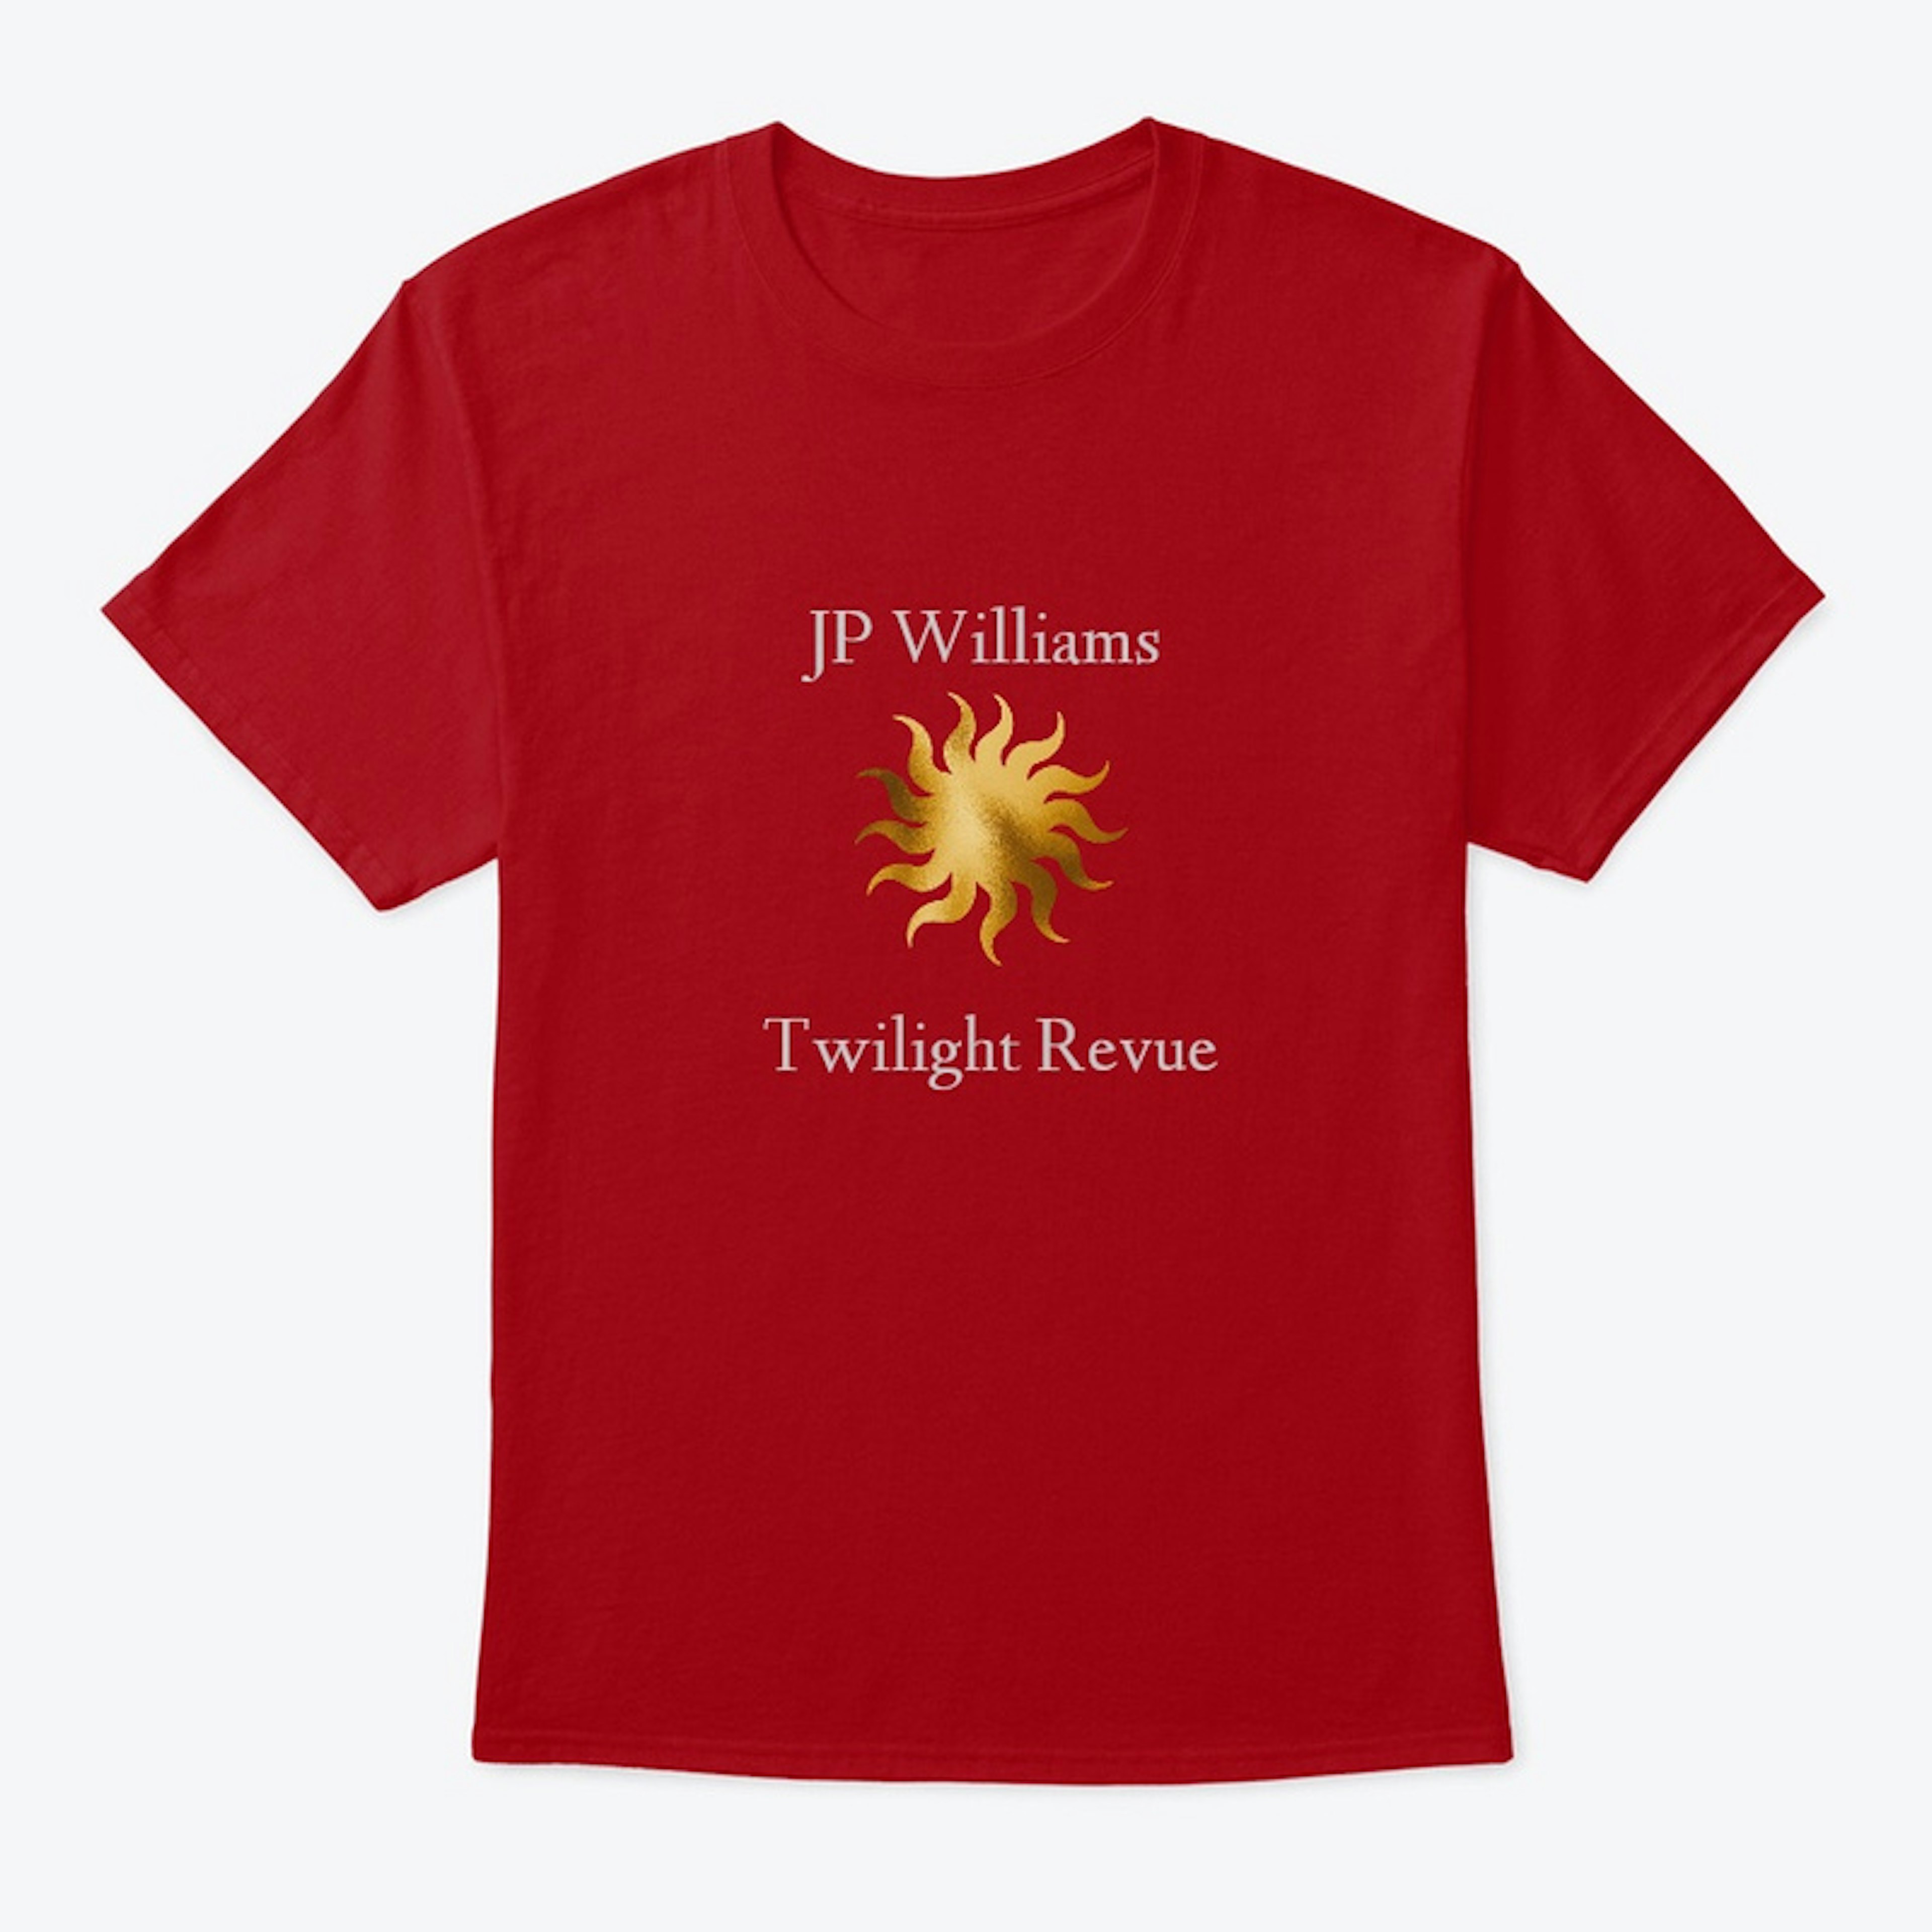 JP Williams Twilight Revue